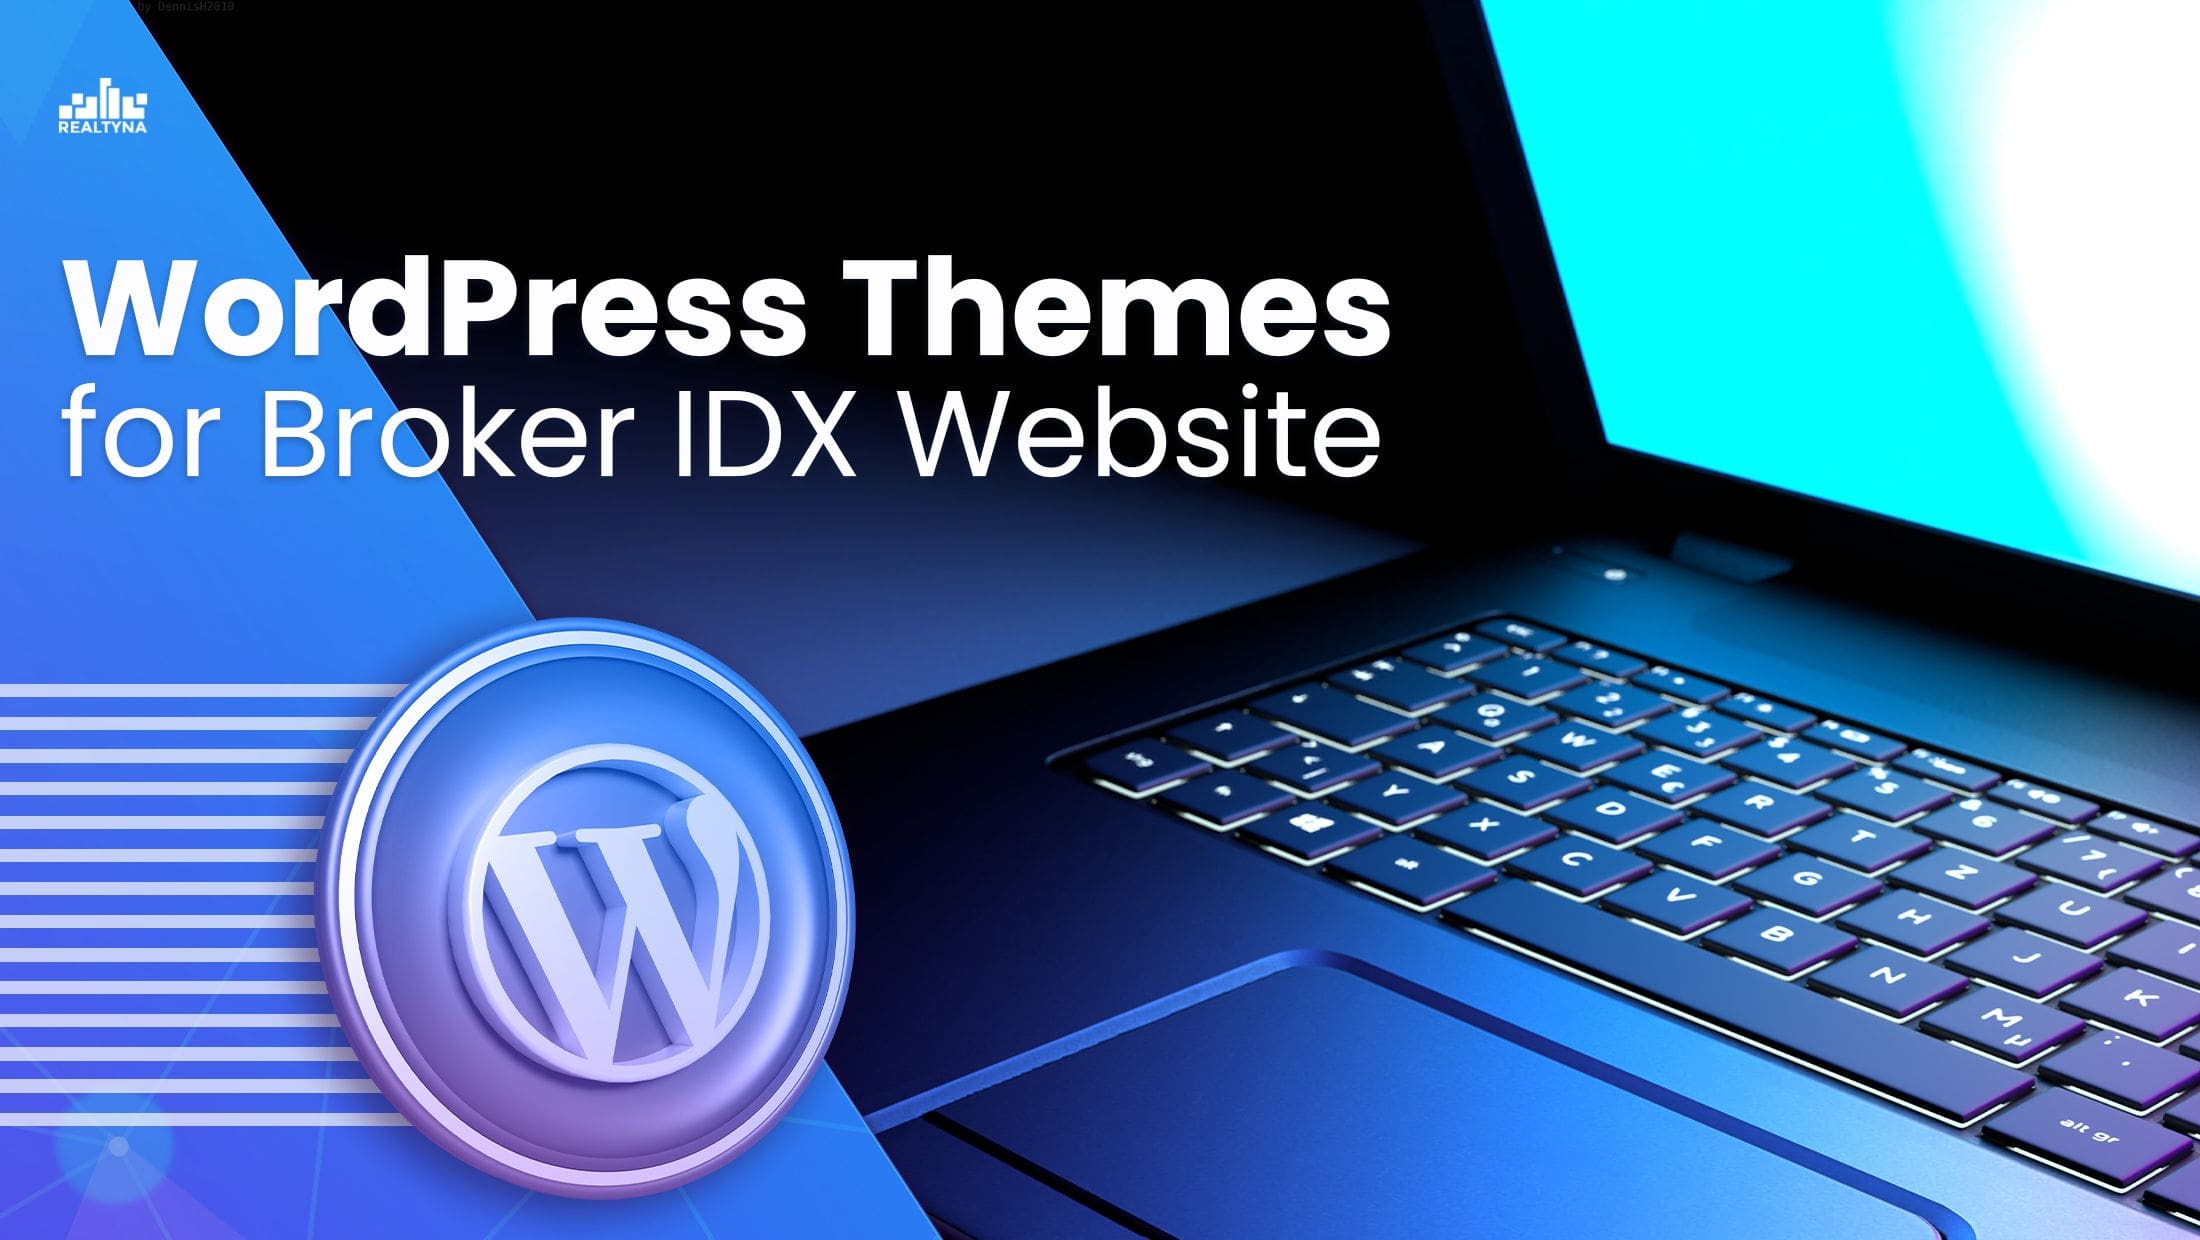 Broker IDX Website